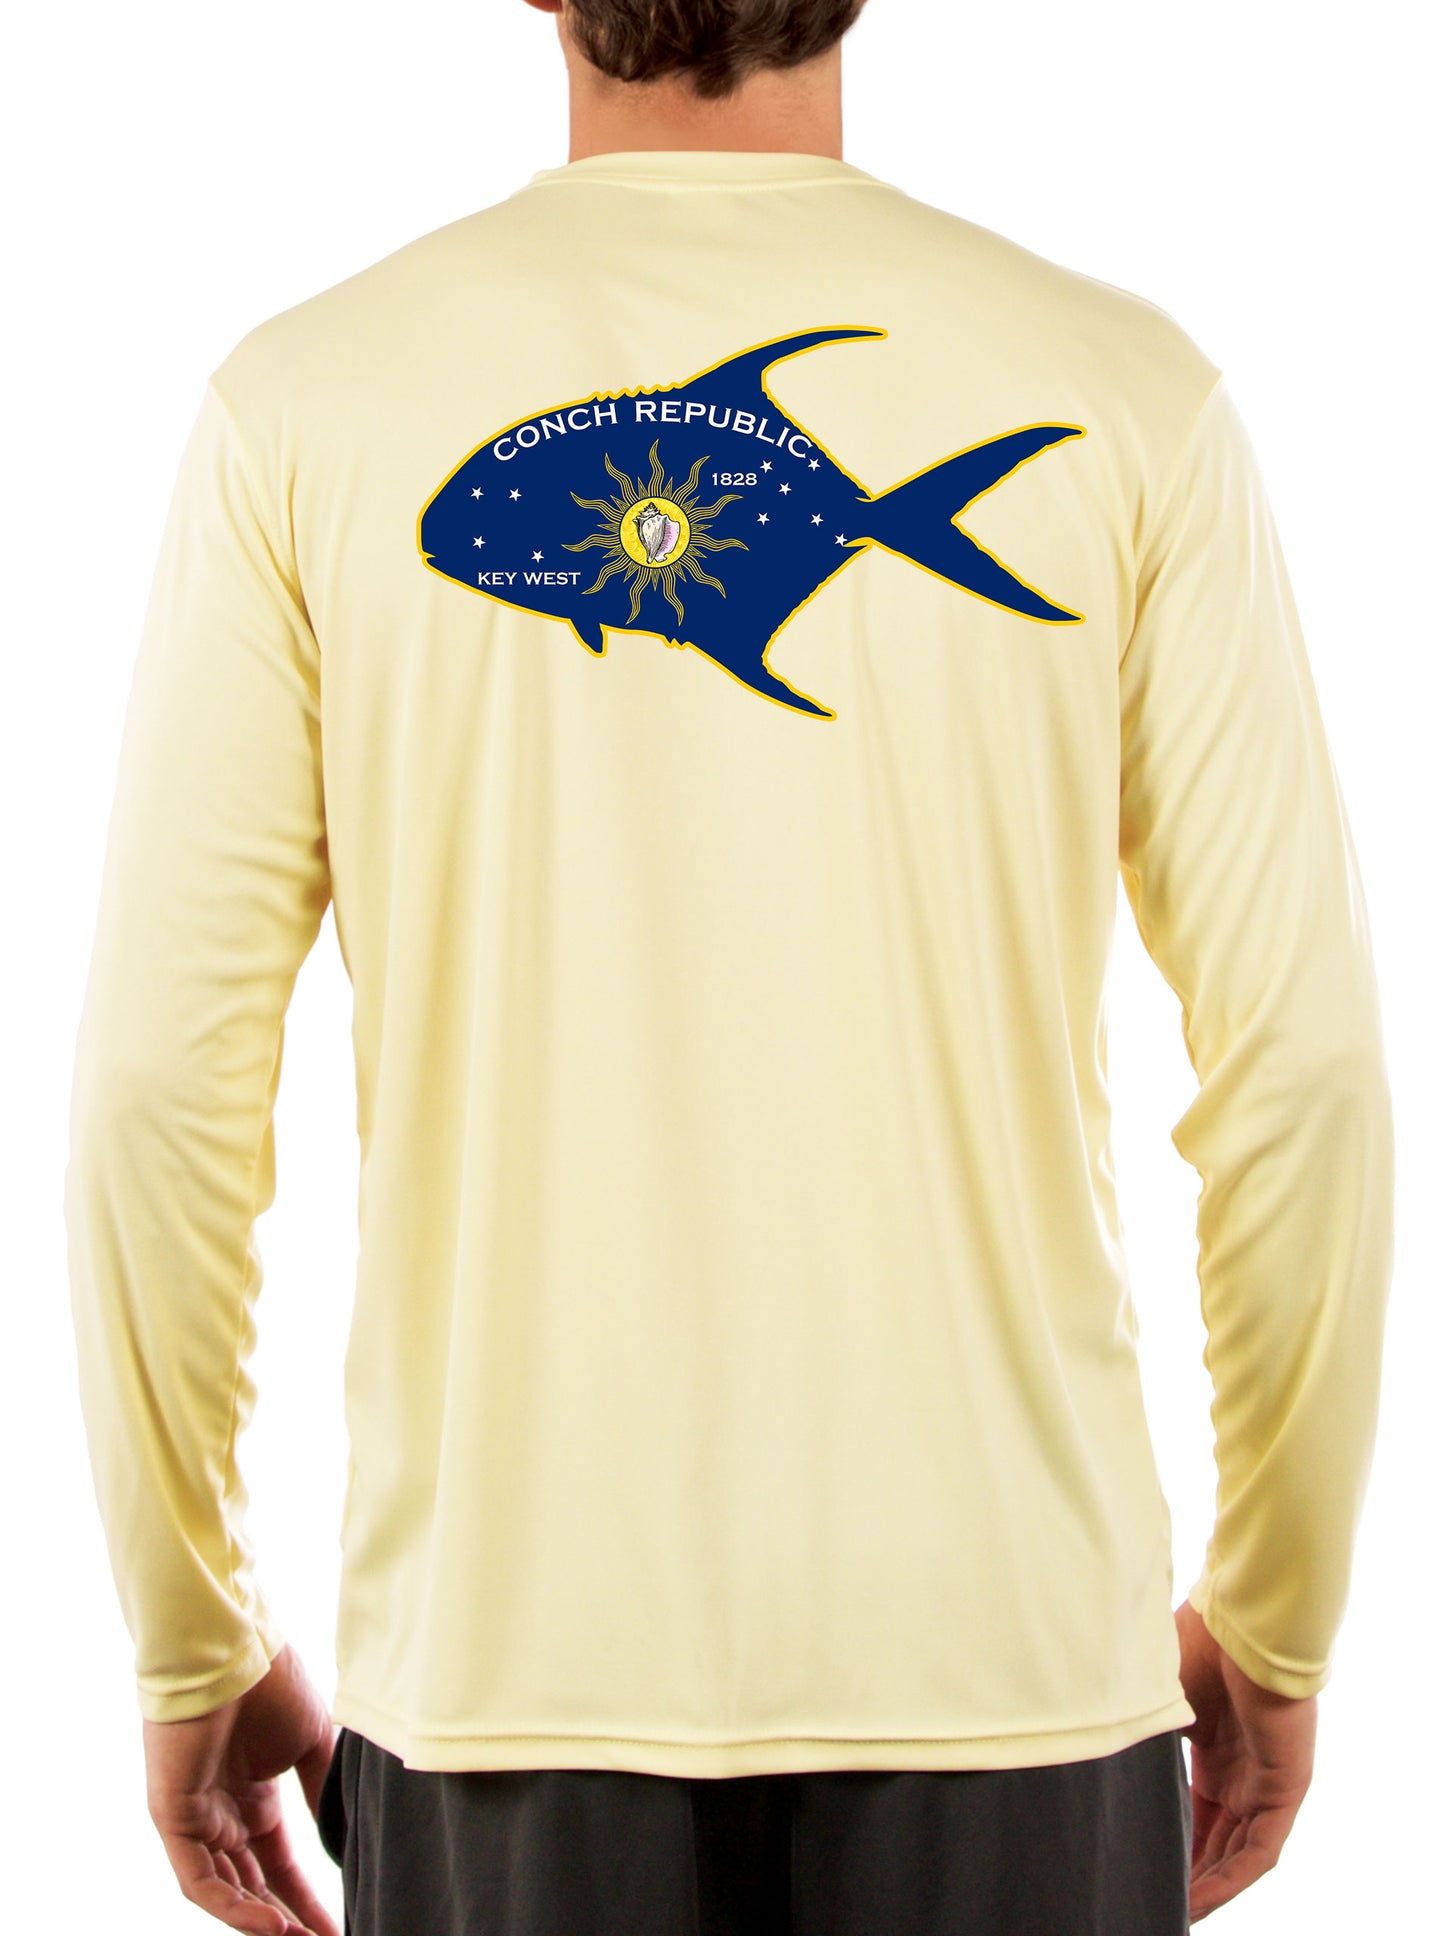 Conch Republic Flag Permit Florida Keys Fishing Shirt - Skiff Life